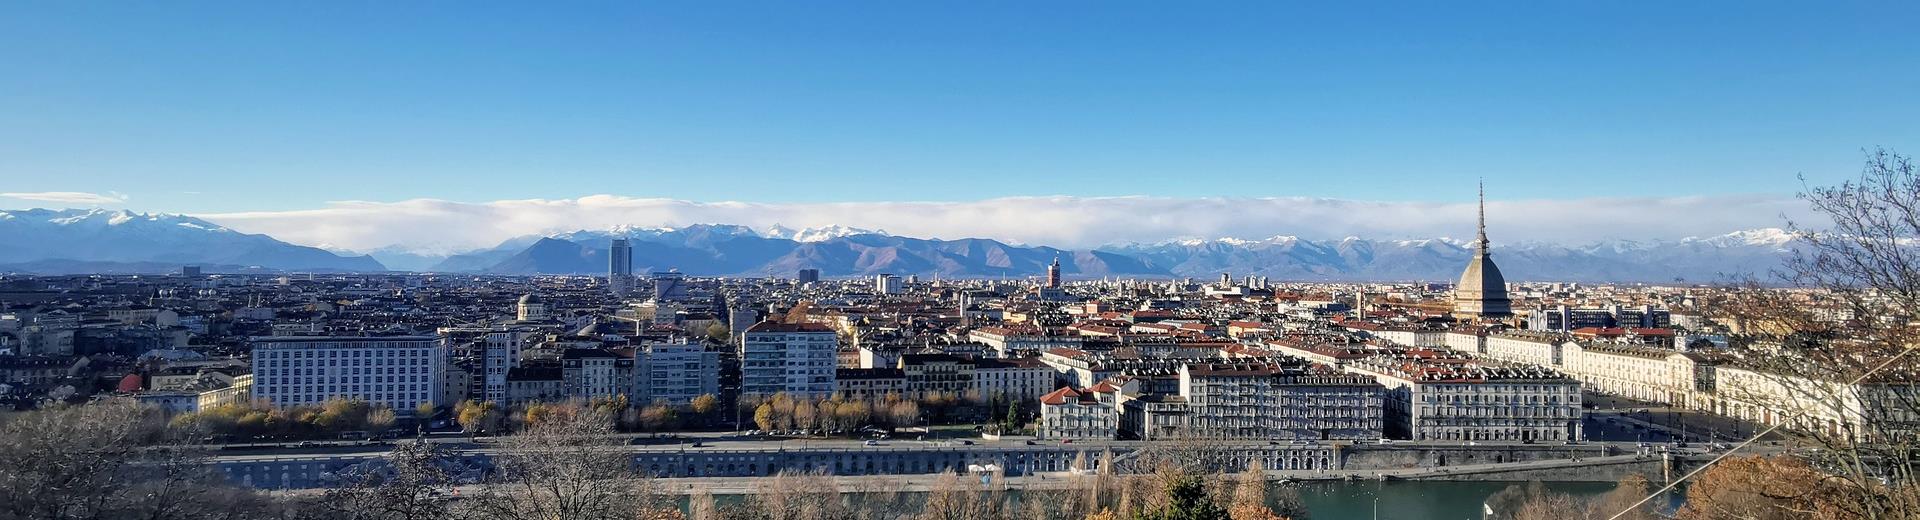 Prenota il tuo hotel a Torino per le manifestazioni di Torino a cielo aperto